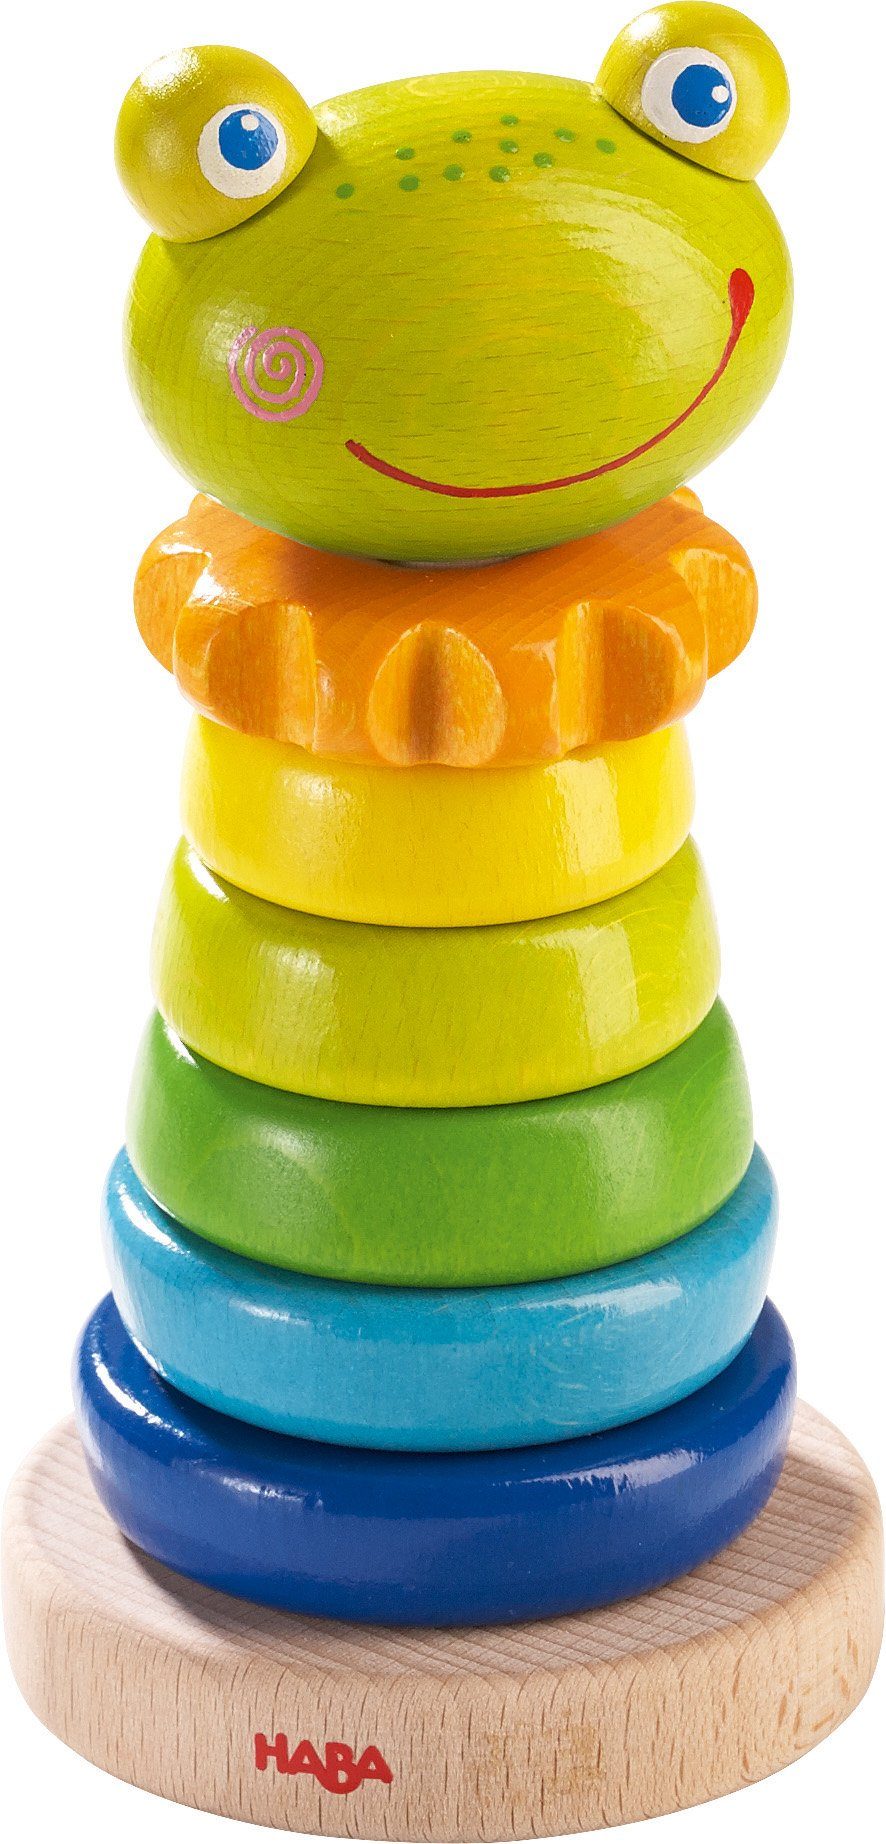 Haba Stapelspielzeug »Steckspiel Frosch«, aus Holz; Made in Germany online  kaufen | OTTO